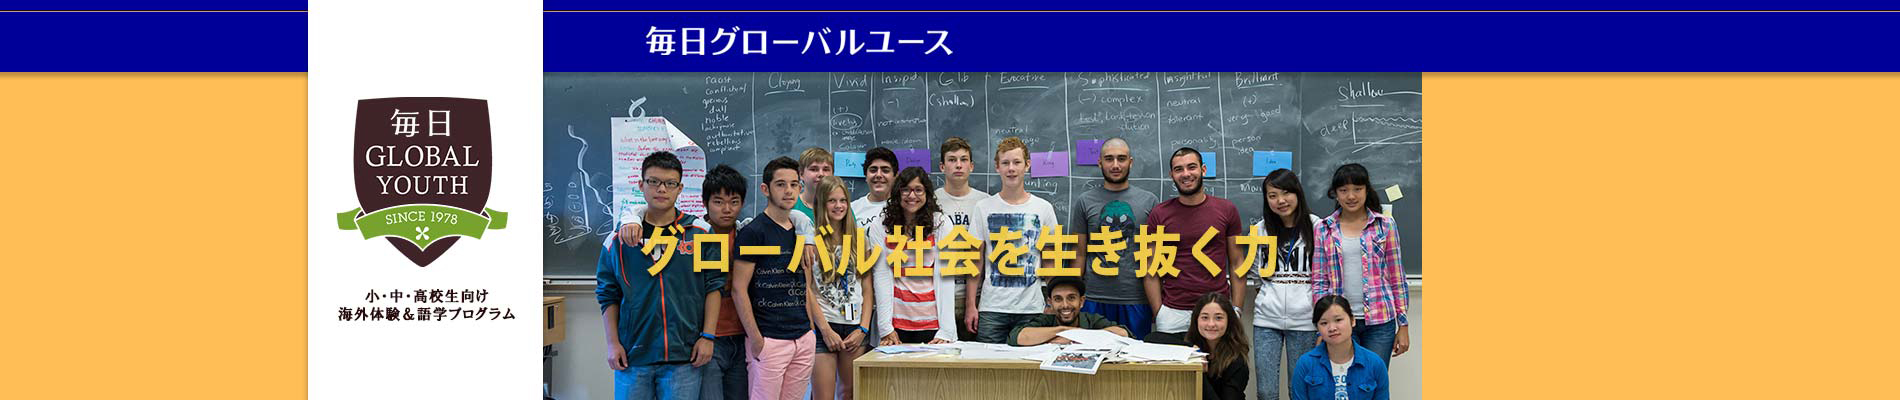 小学・中学・高校生向け語学＆海外体験「毎日グローバルユース」